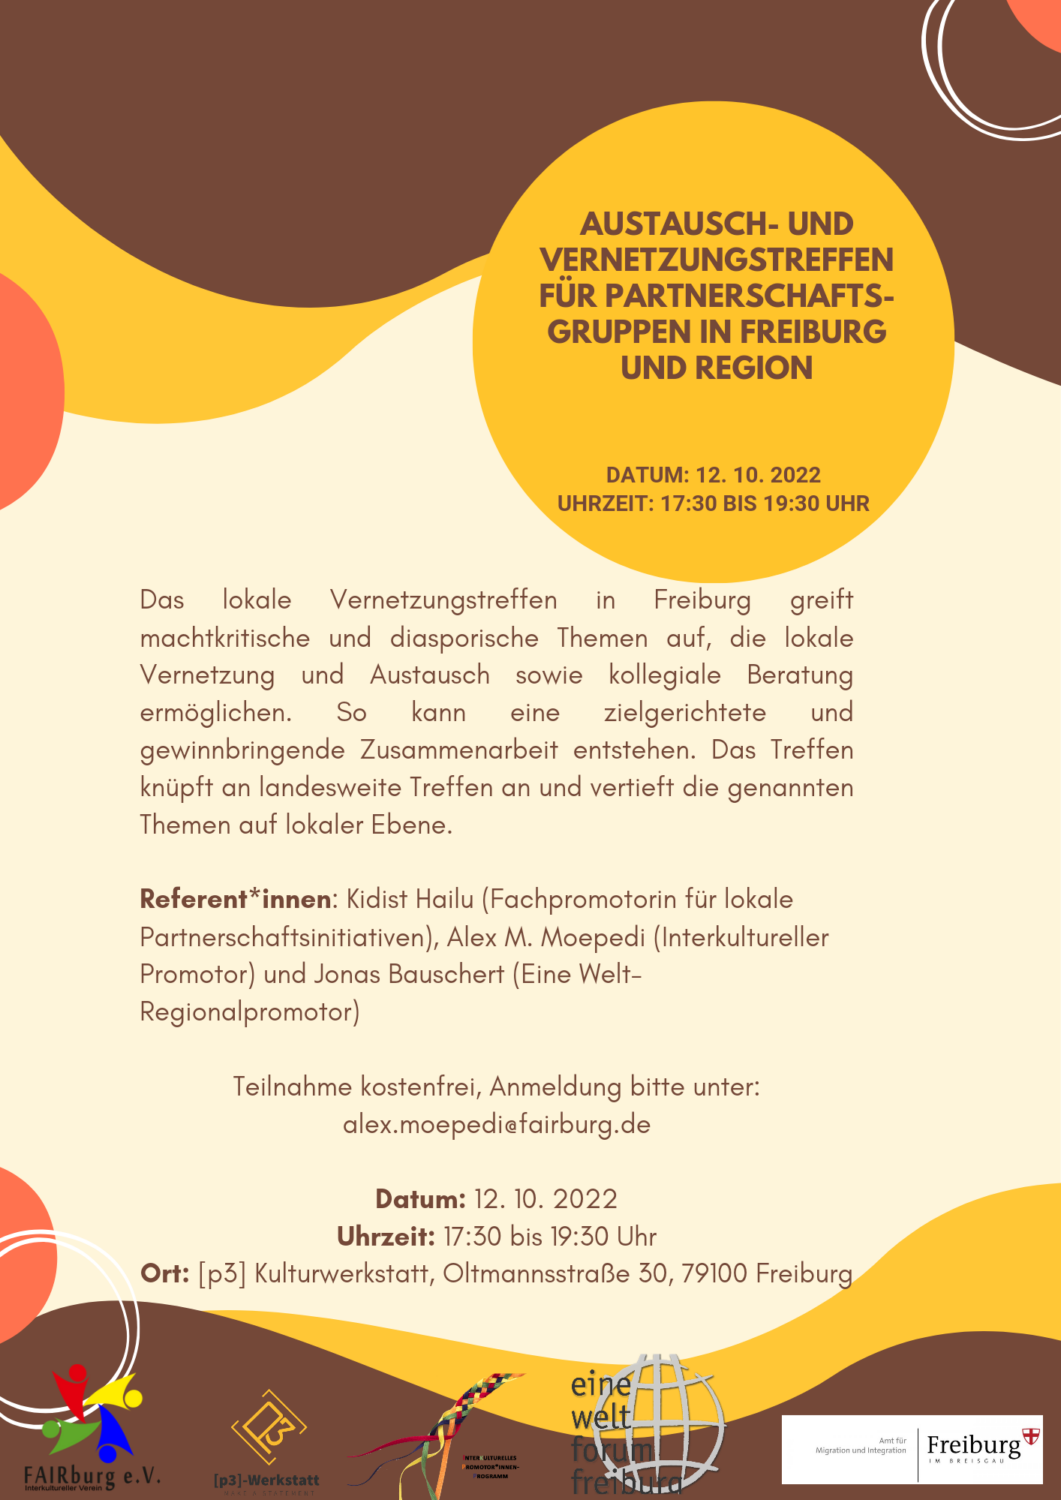 Austausch- und Vernetzungstreffen für Partnerschaftsgruppen in Freiburg und Region @ [p3] Kulturwerkstatt